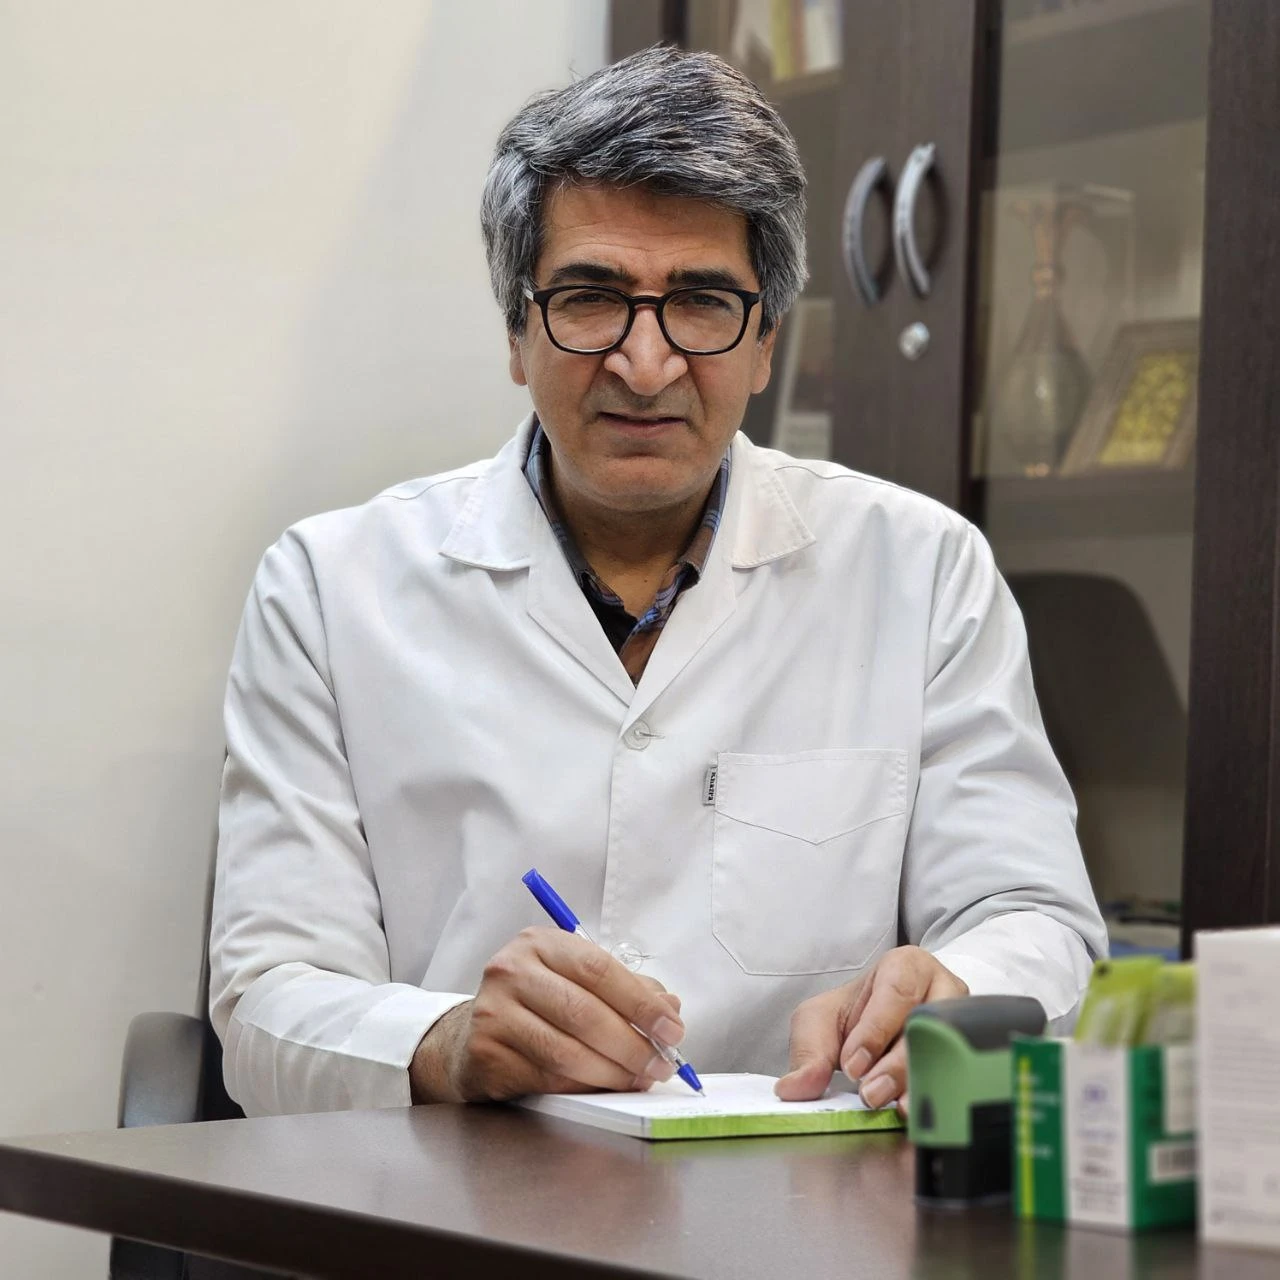 مشاوره پزشکی با دکتر سیدجواد مجتبوی